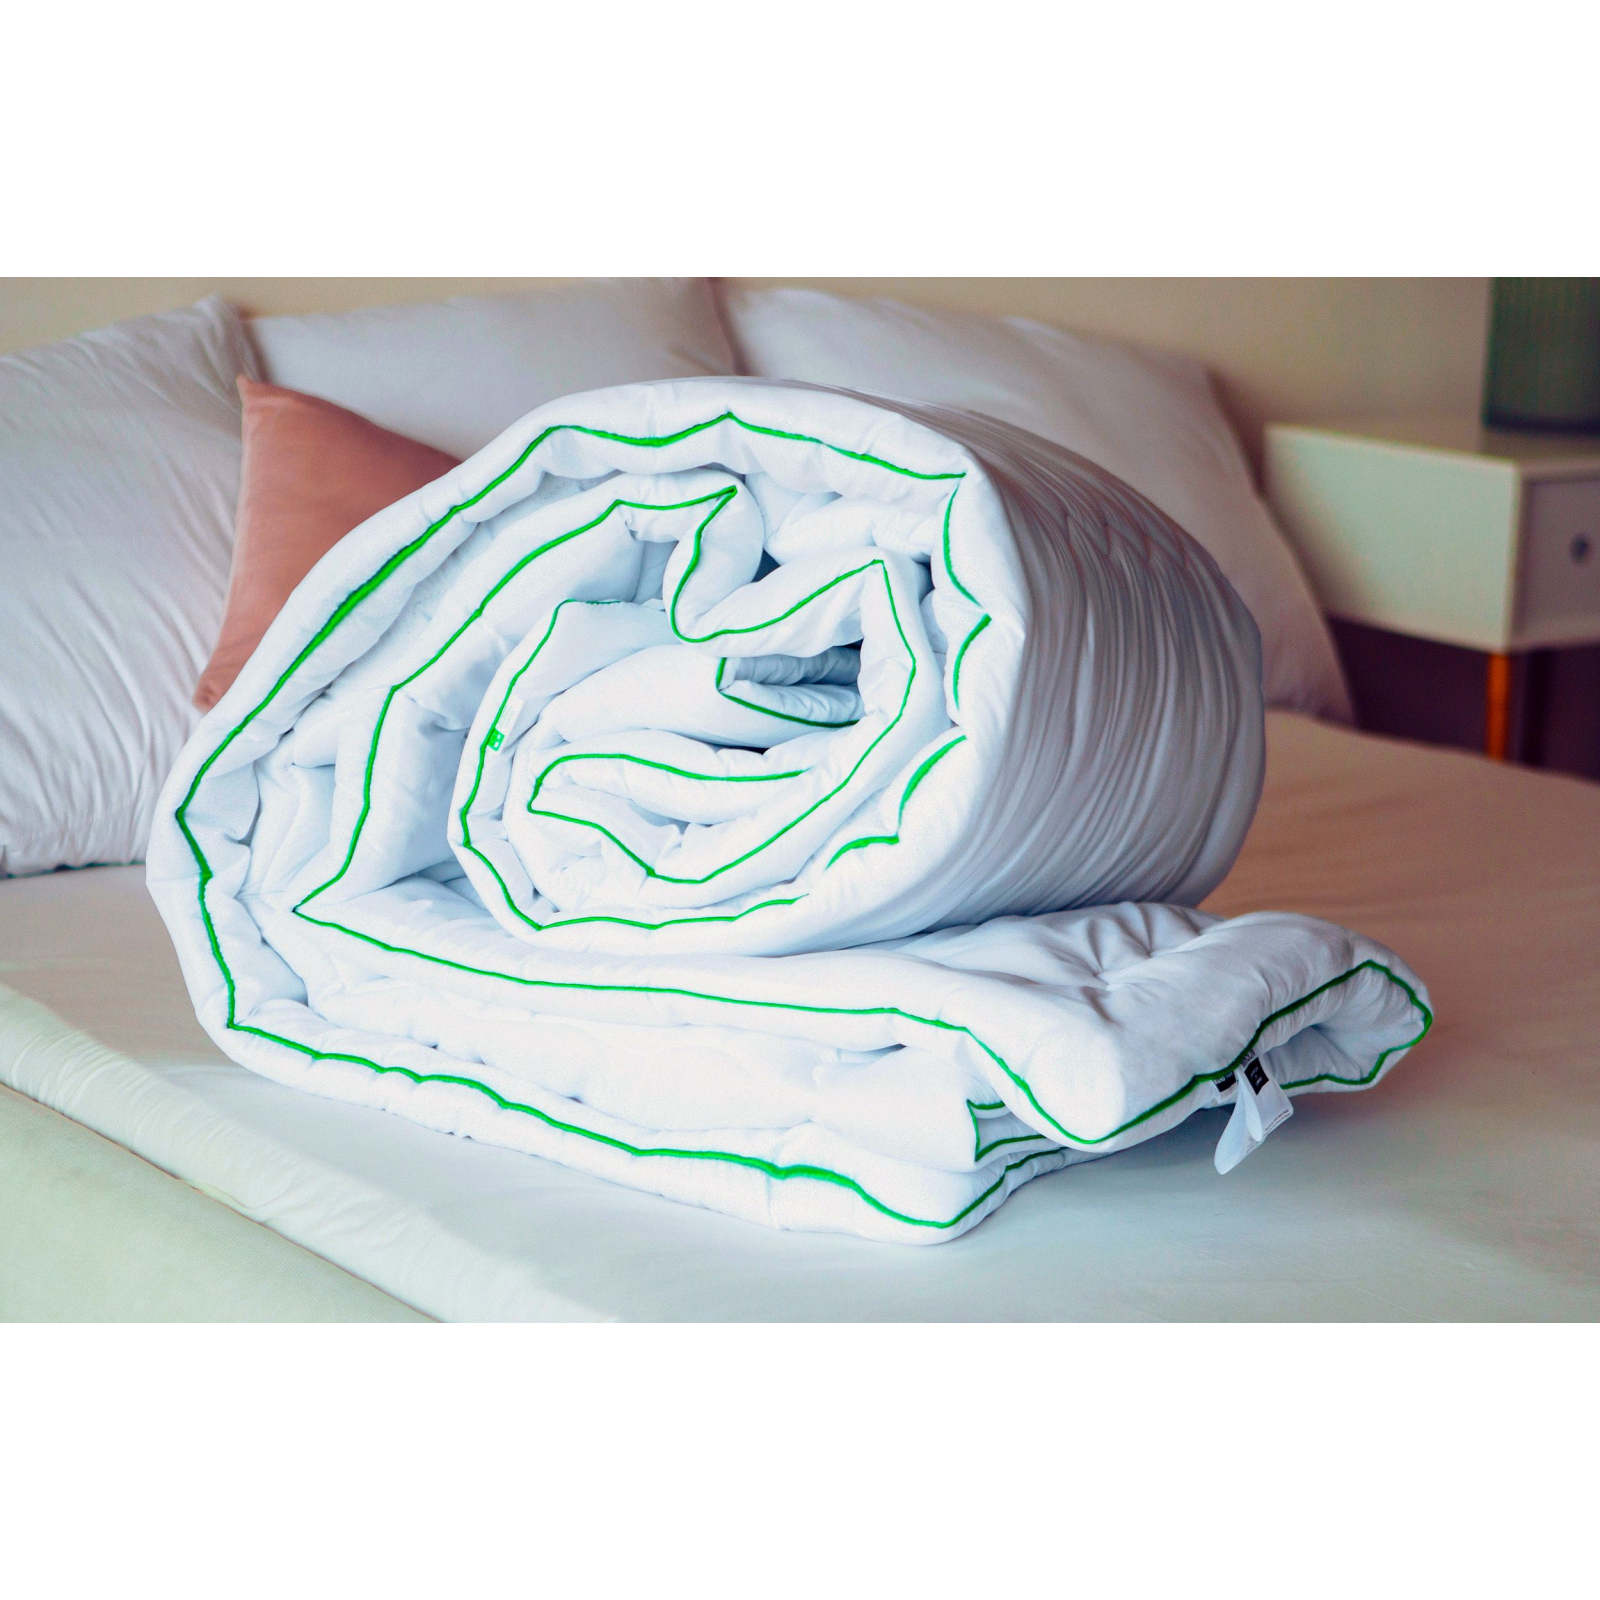 Одеяло MirSon антиаллергенное Eco Eco-Soft Hand Made 812 Деми 200x220 см (2200000621788) изображение 12